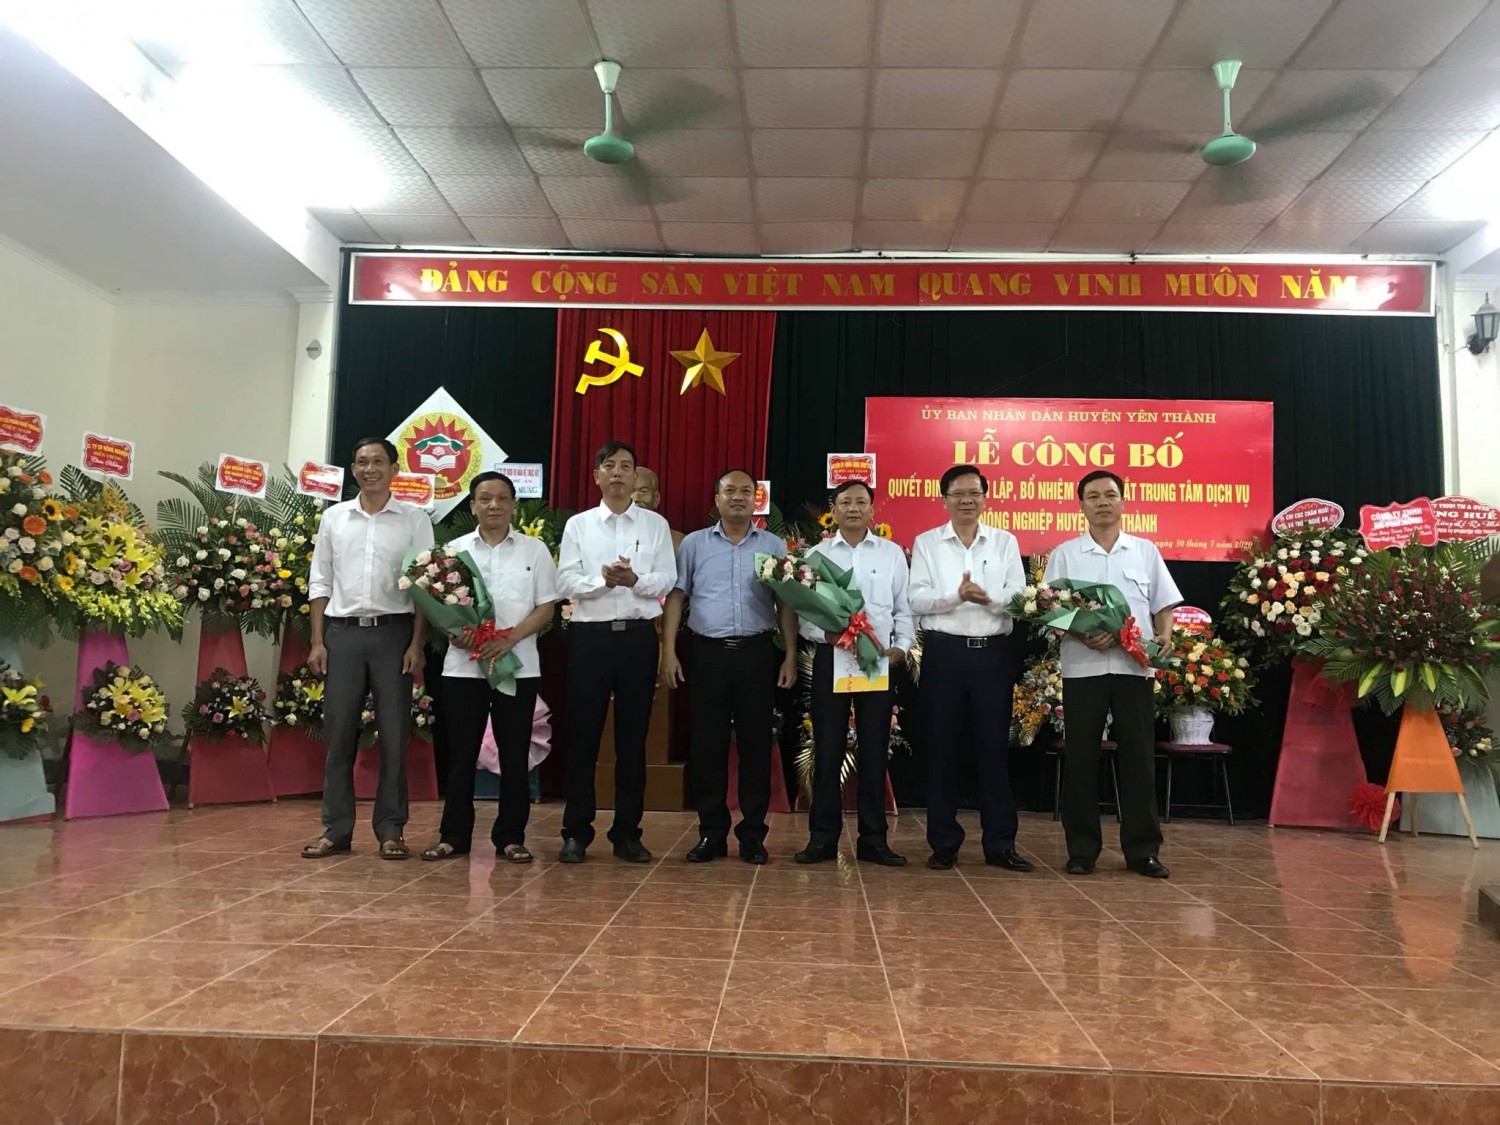 UBND huyện Yên Thành: Công bố thành lập Trung tâm Dịch vụ nông nghiệp huyện Yên Thành.